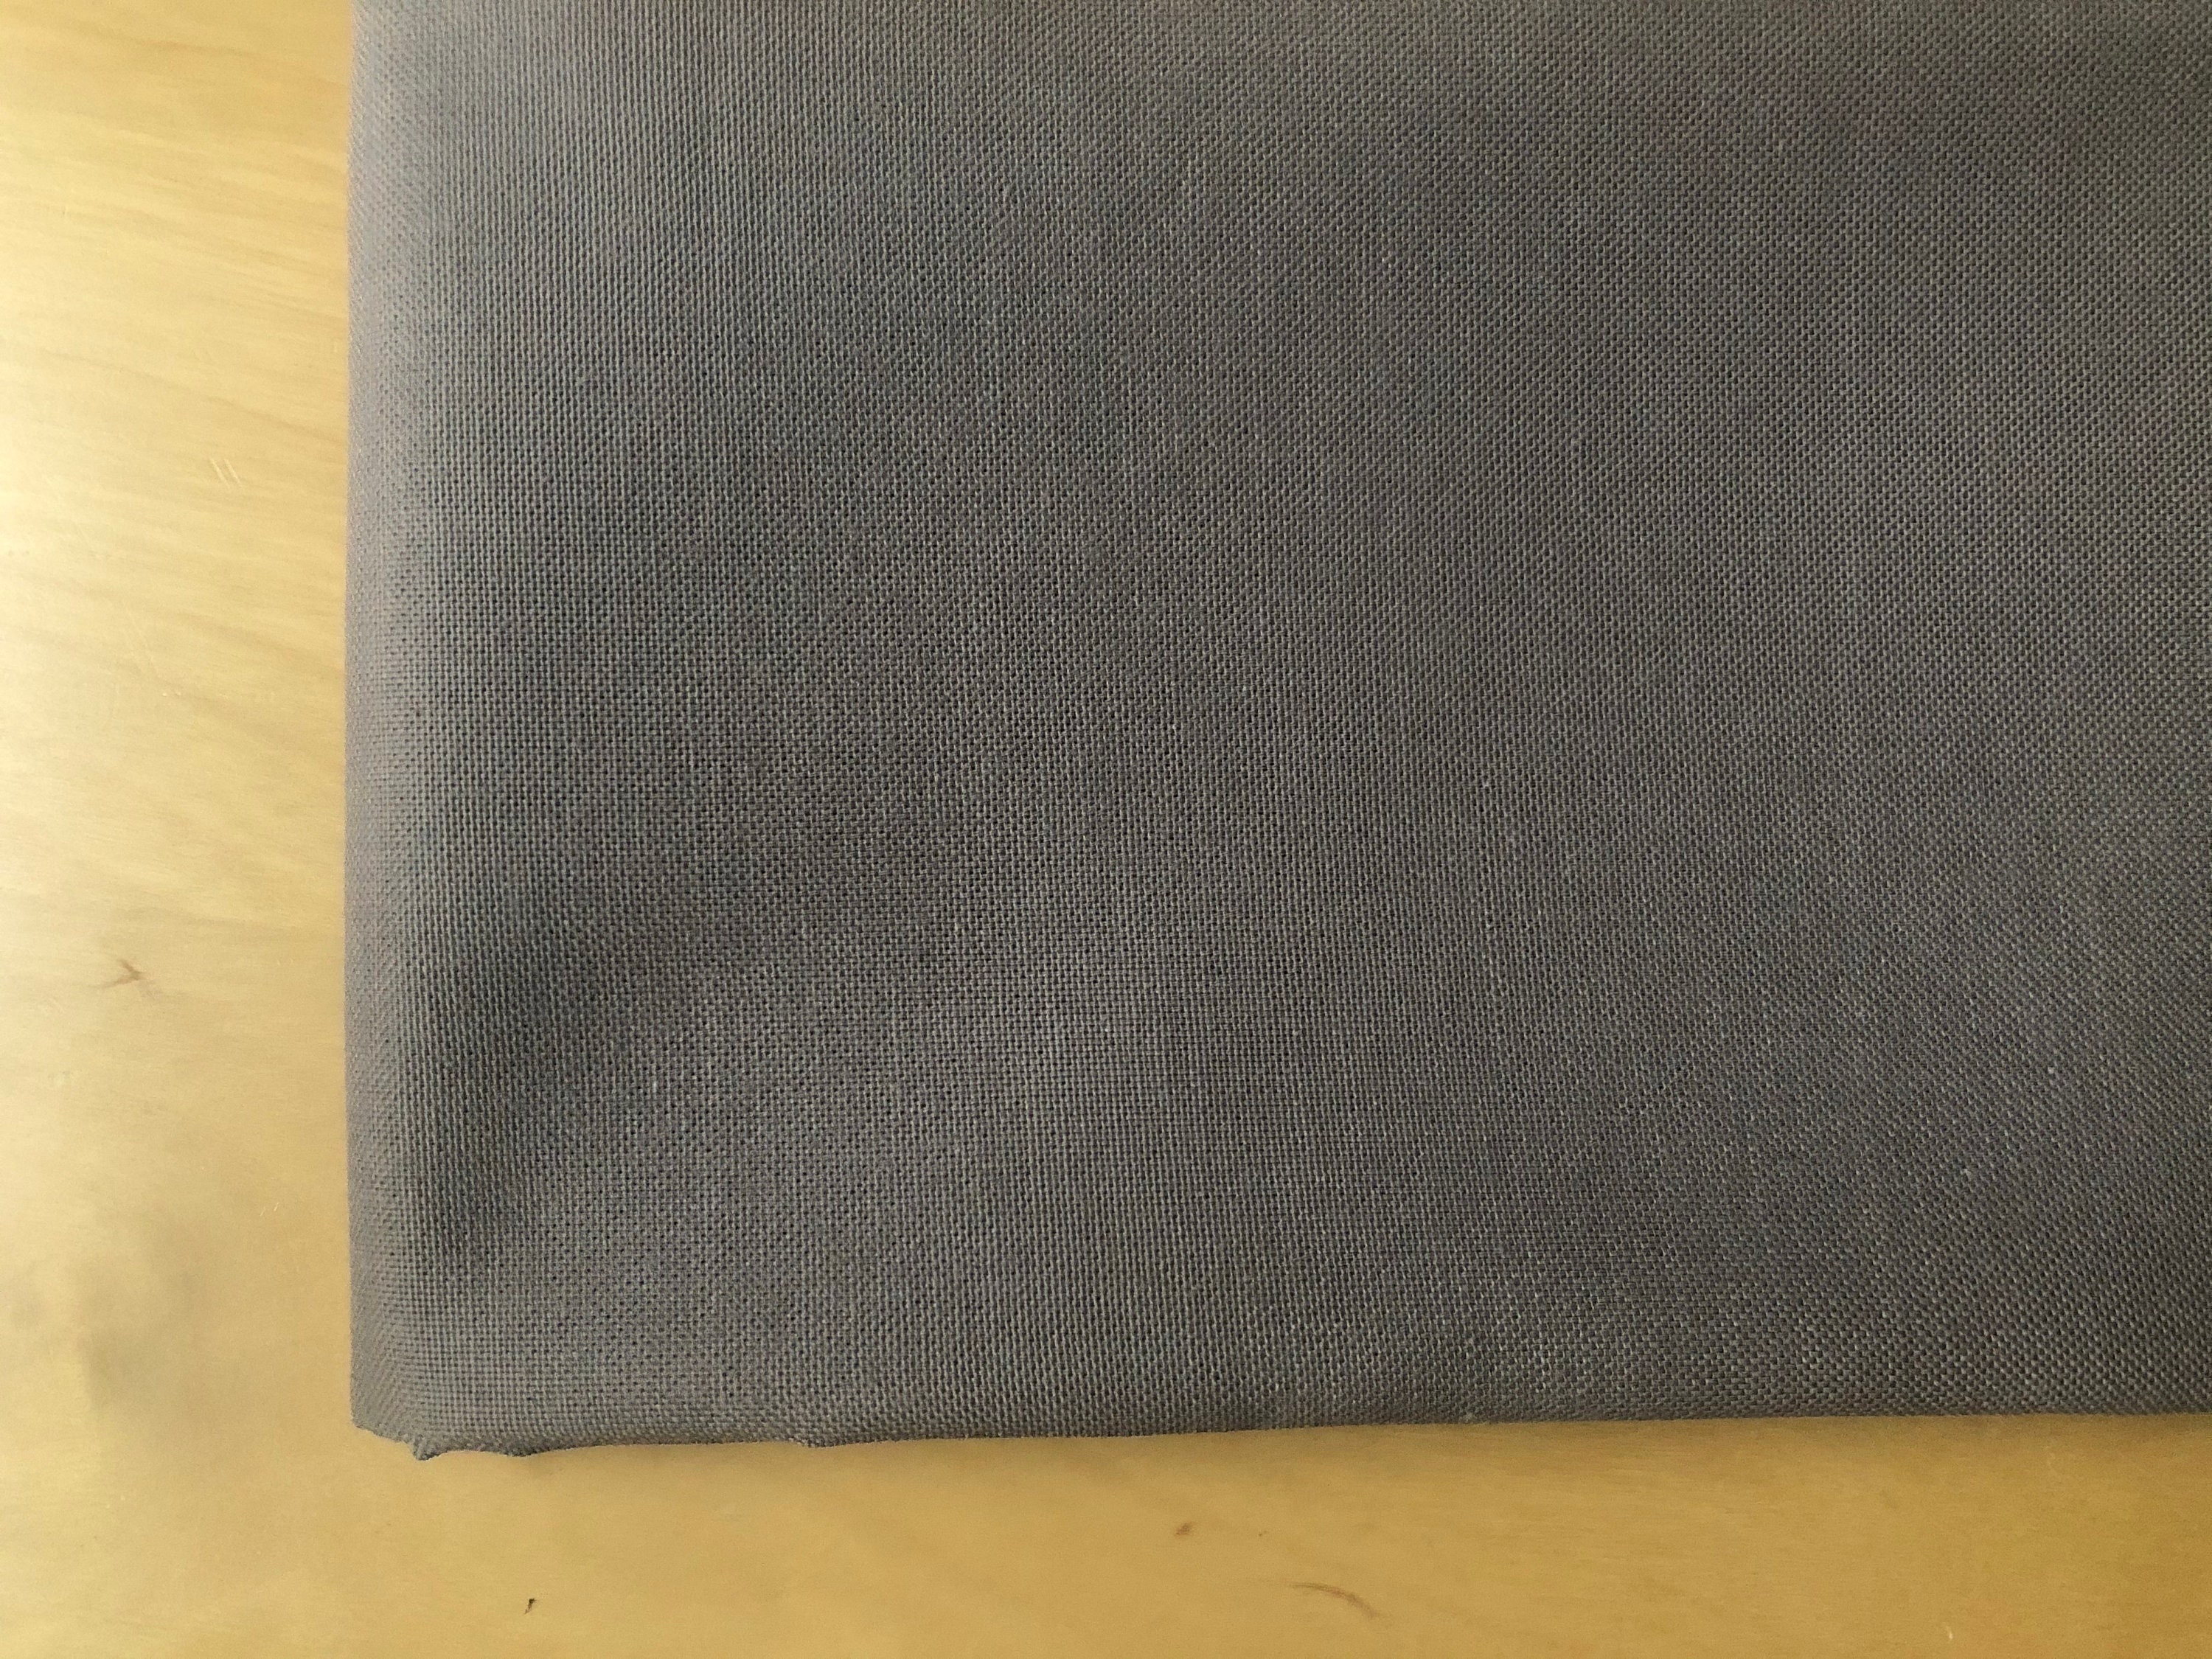 Plain Medium Weight Cotton Fabric for Dressmaking Curtains - Etsy UK